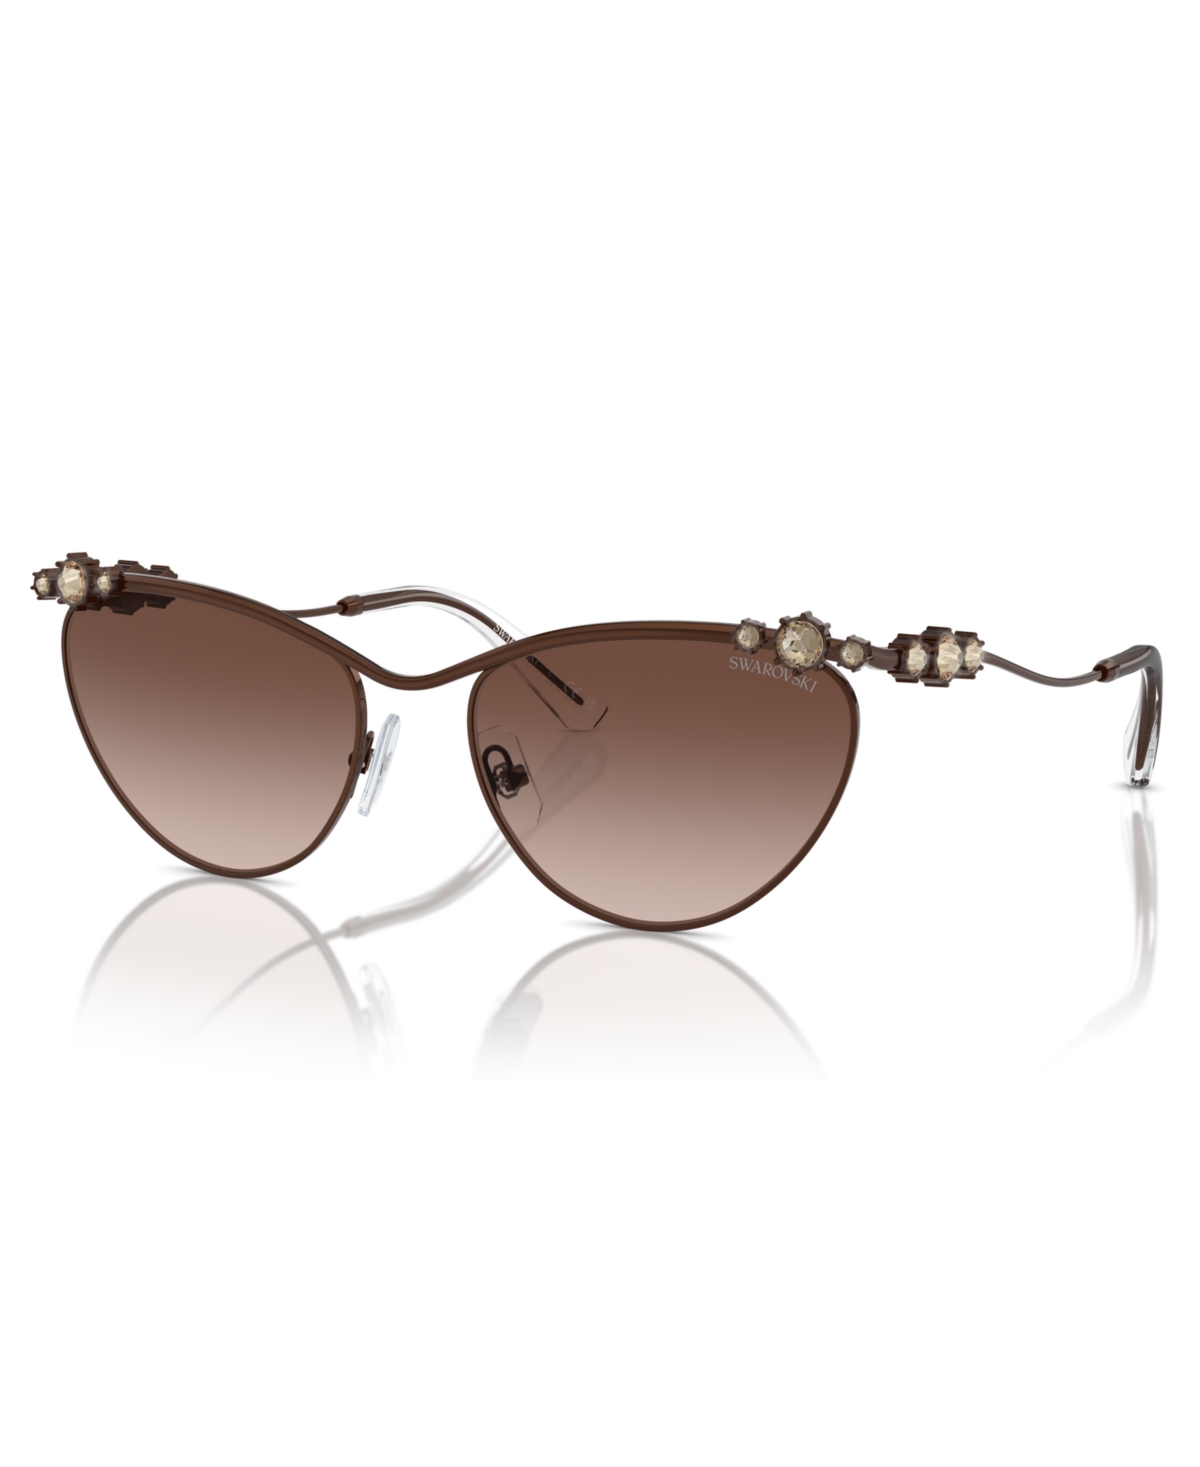 Swarovski Women's Sunglasses, Sk7017 In Brown